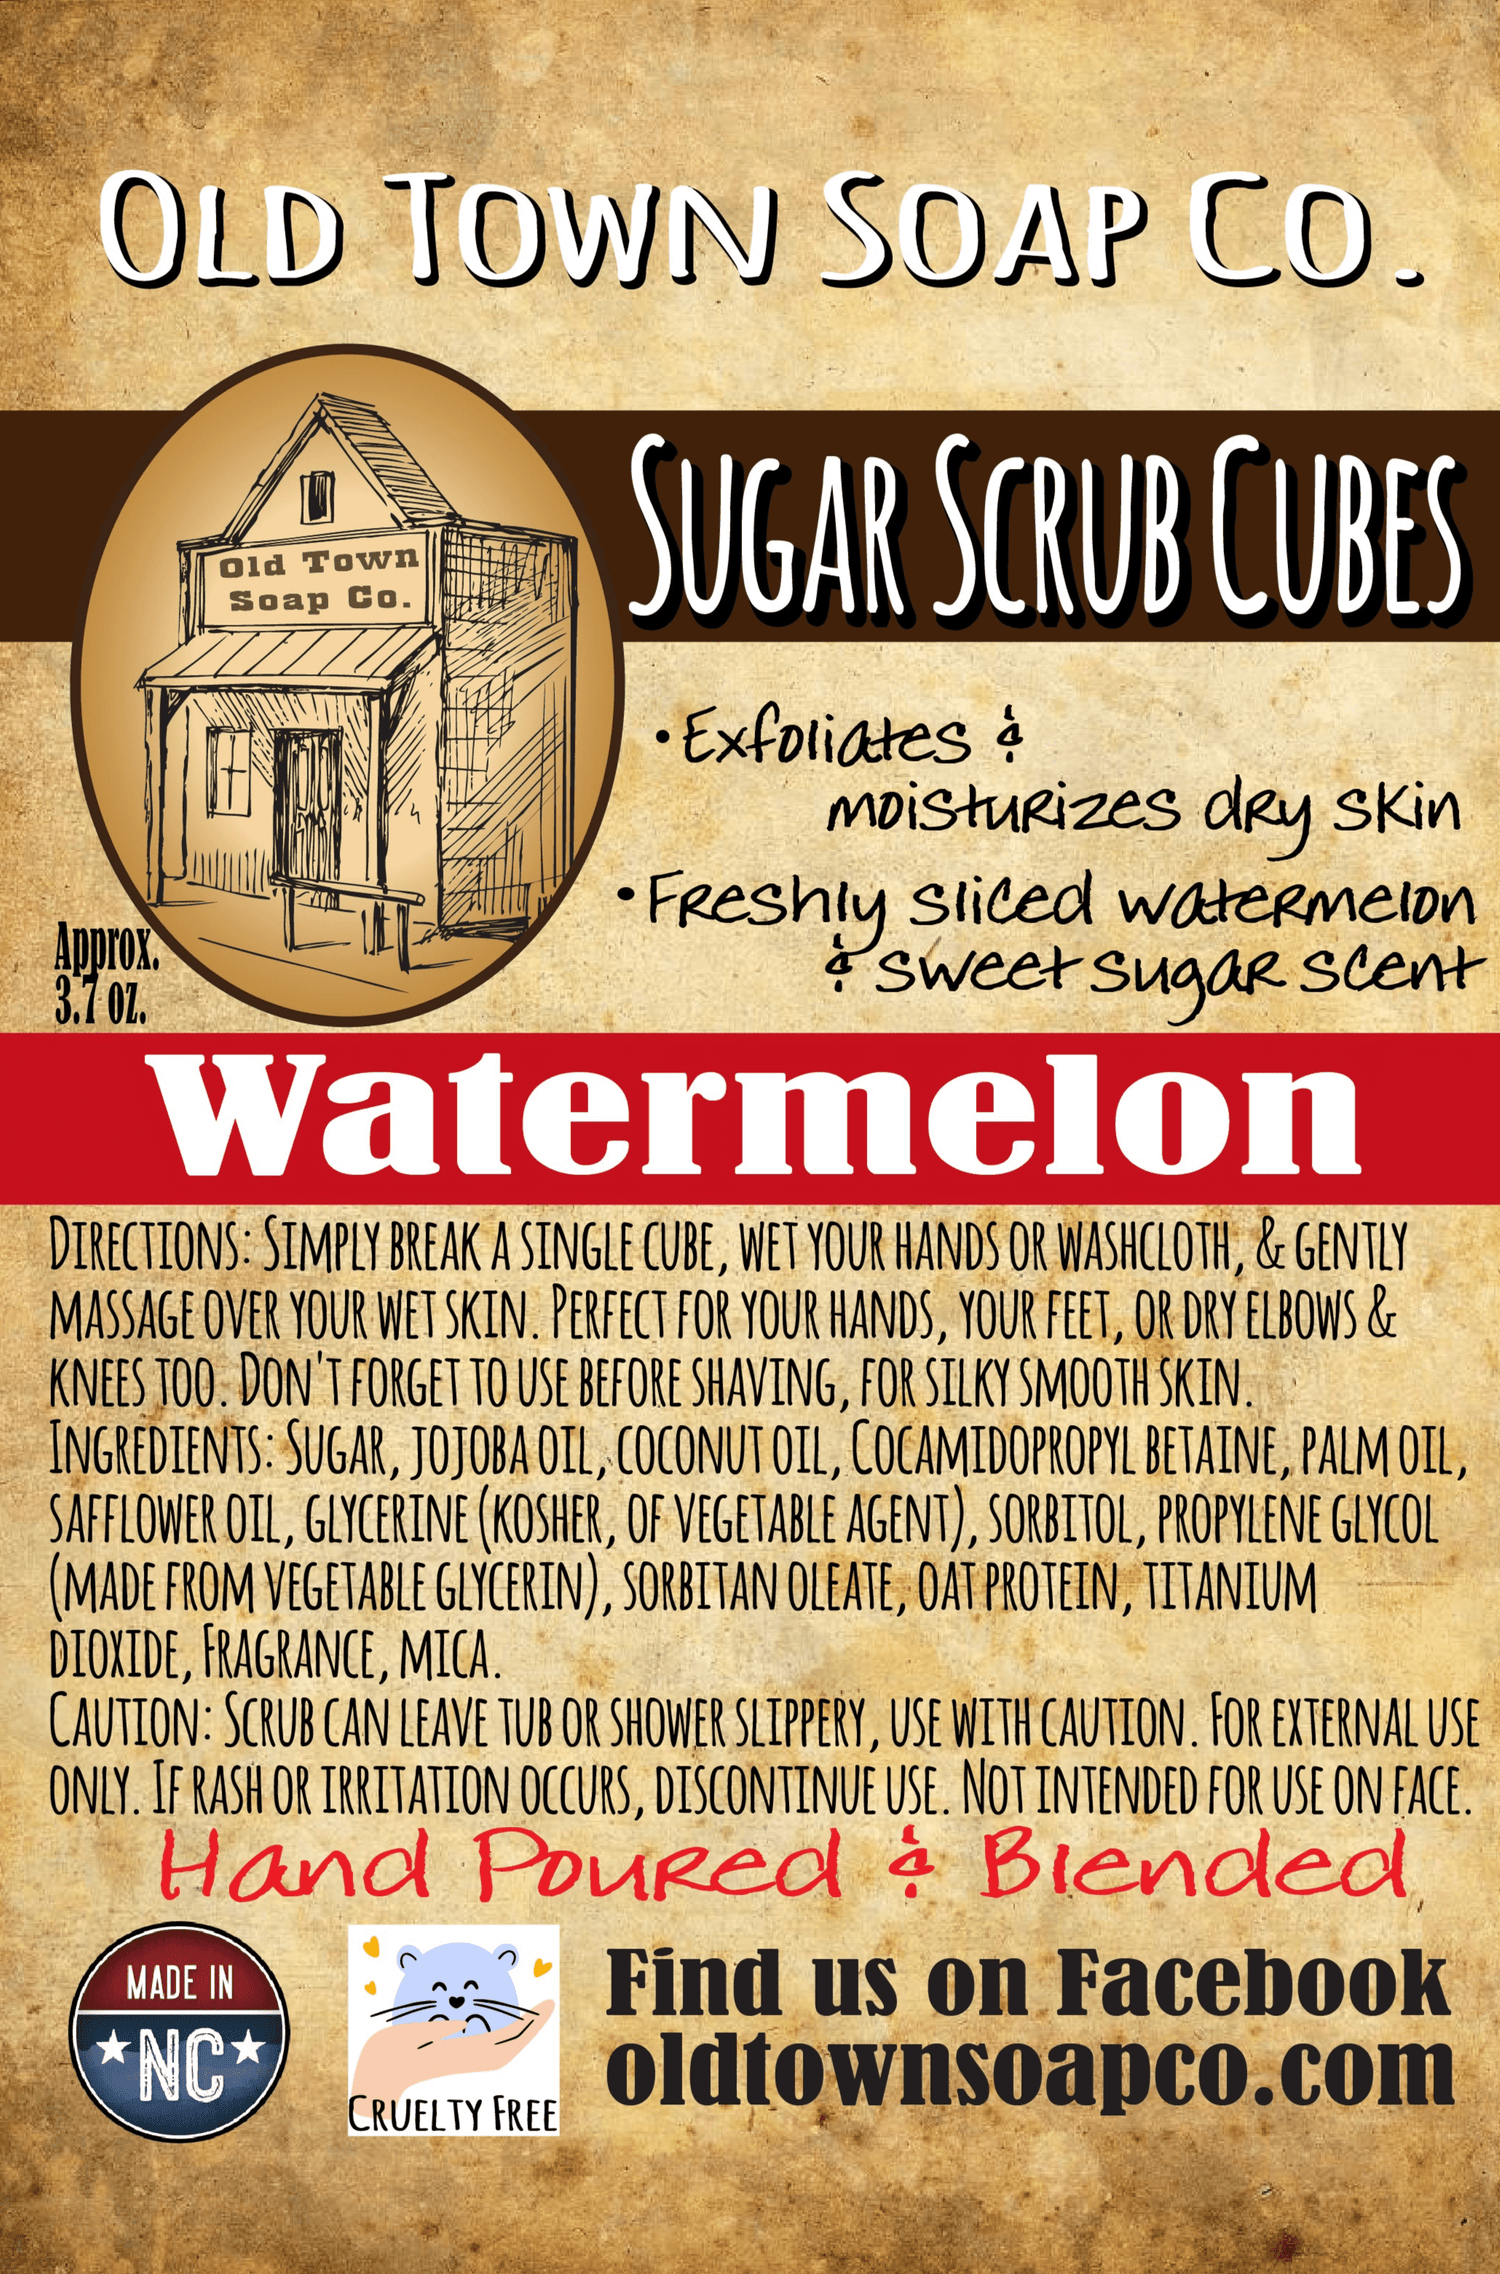 Watermelon Sugar Scrub Cubes - Old Town Soap Co.